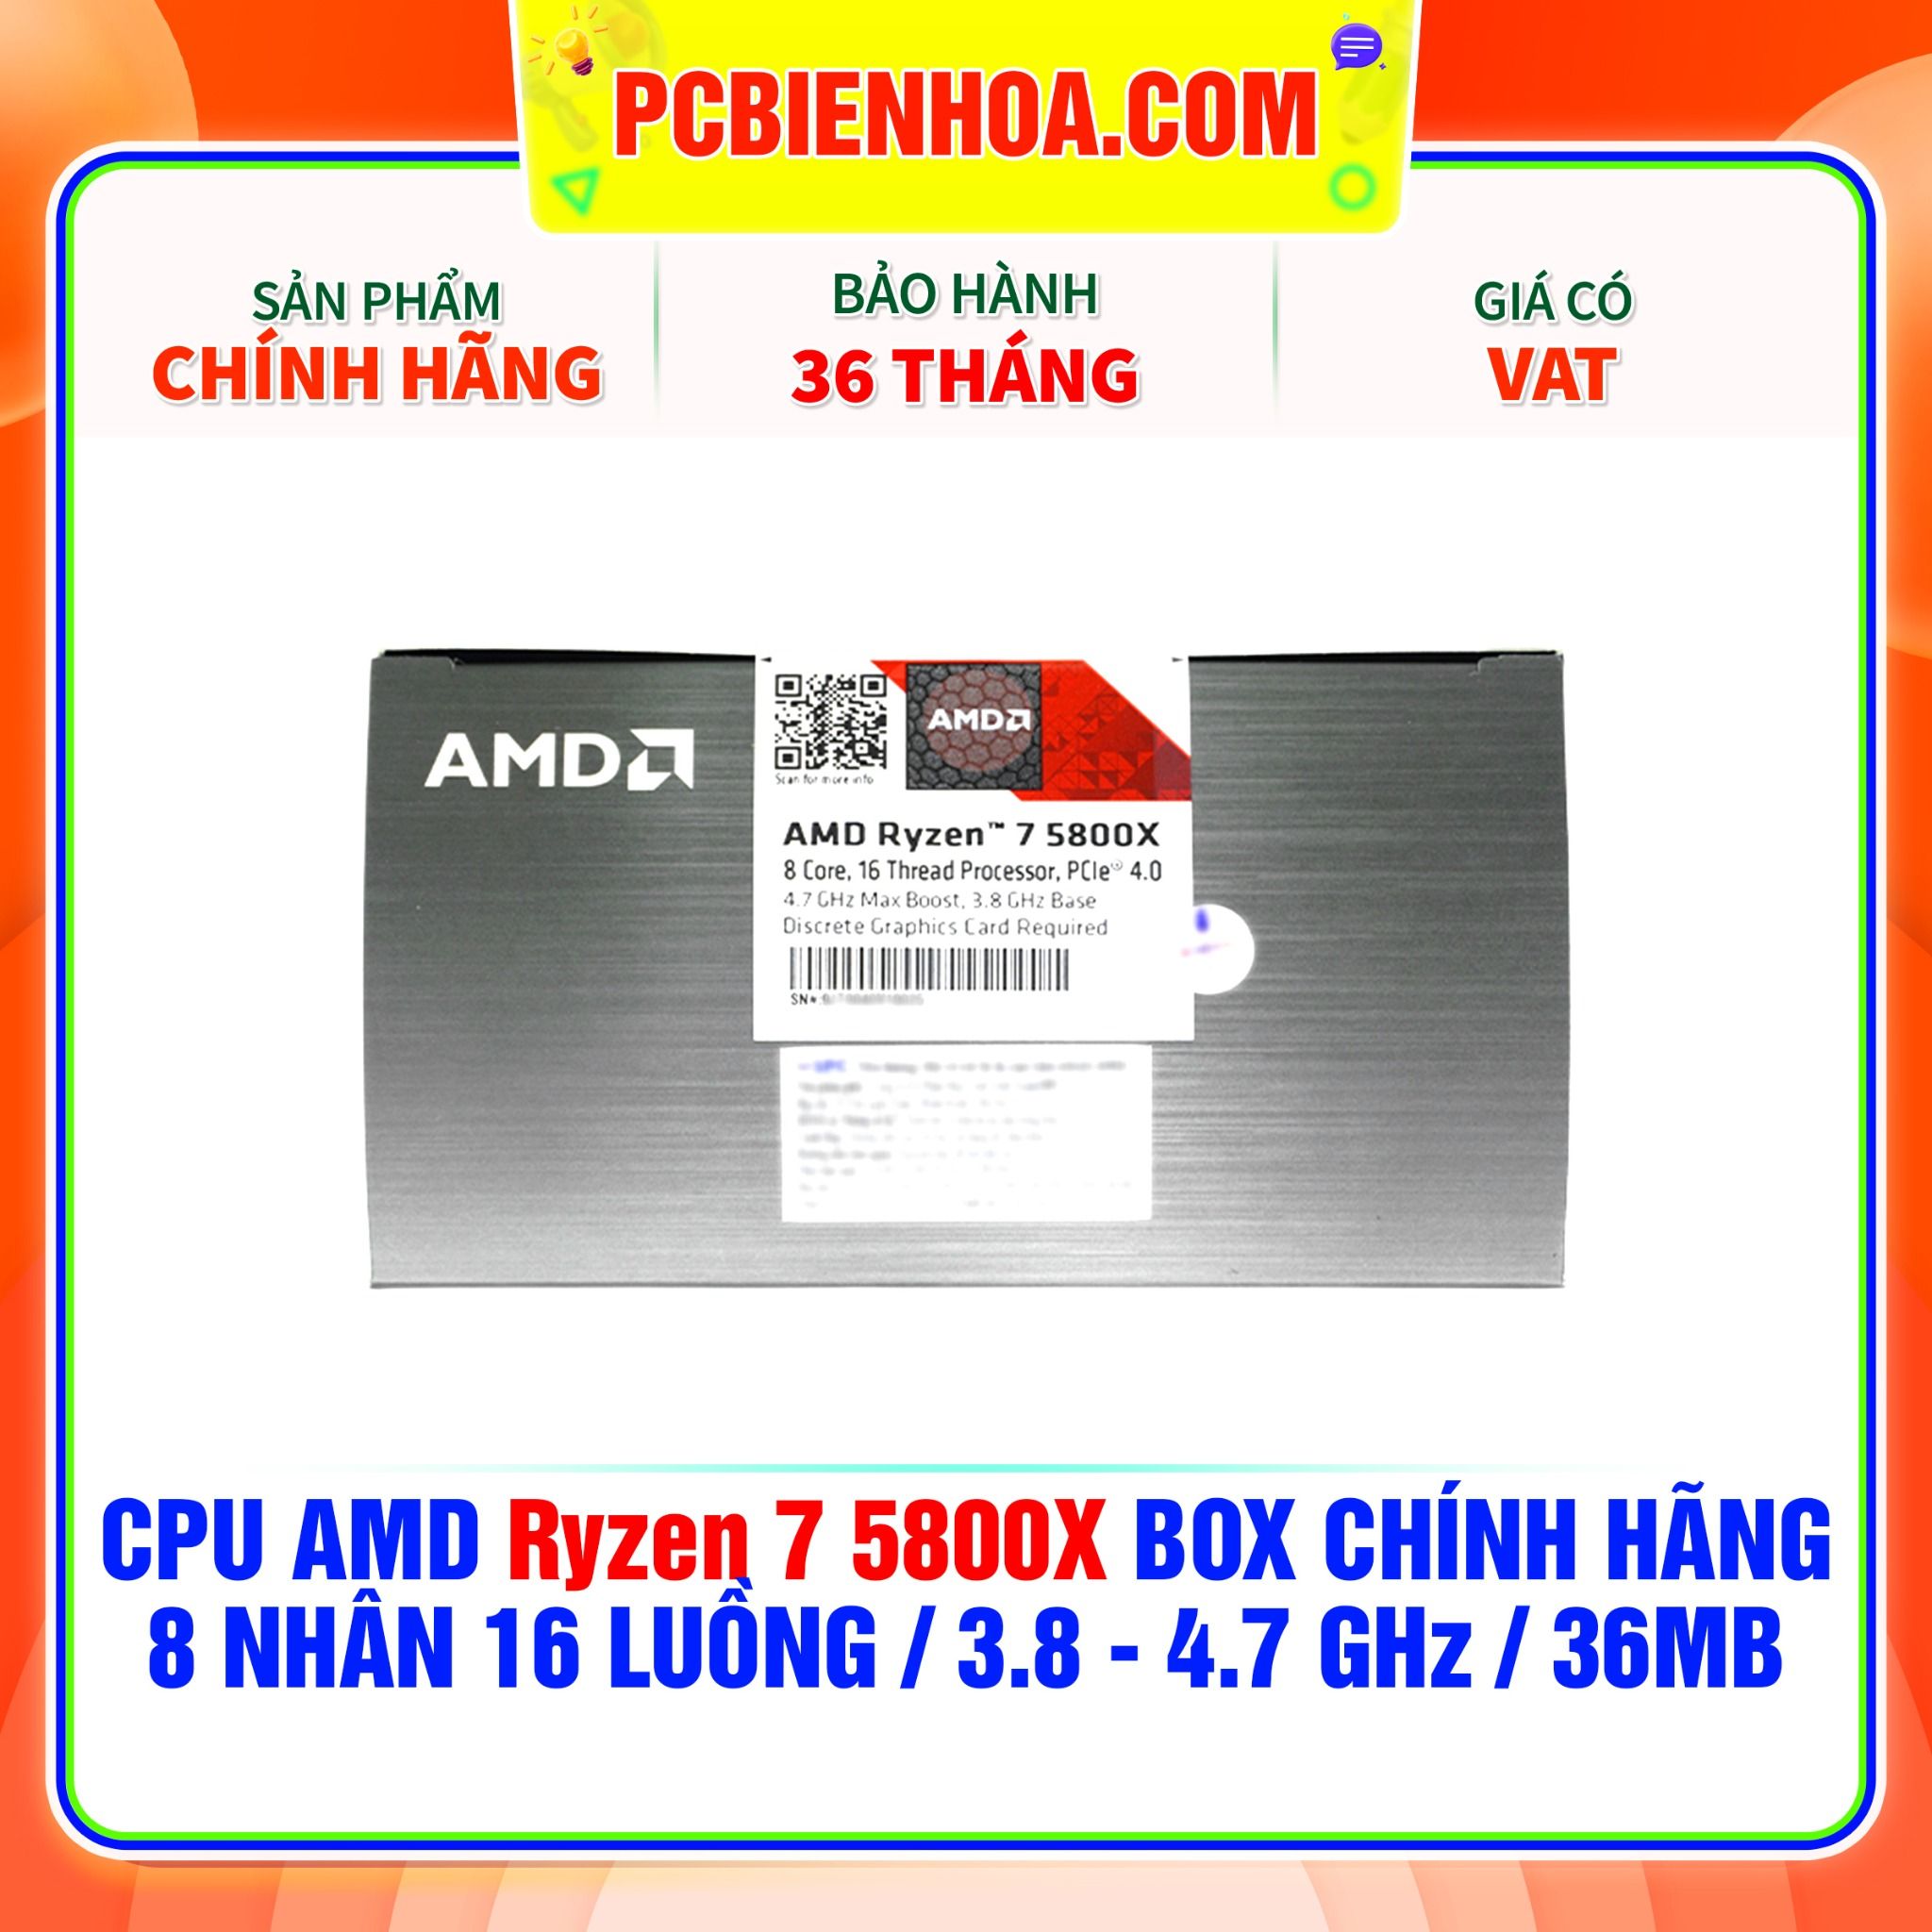  CPU AMD Ryzen 7 5800X BOX CHÍNH HÃNG ( 8 NHÂN 16 LUỒNG / 3.8 - 4.7 GHz / 36MB ) 